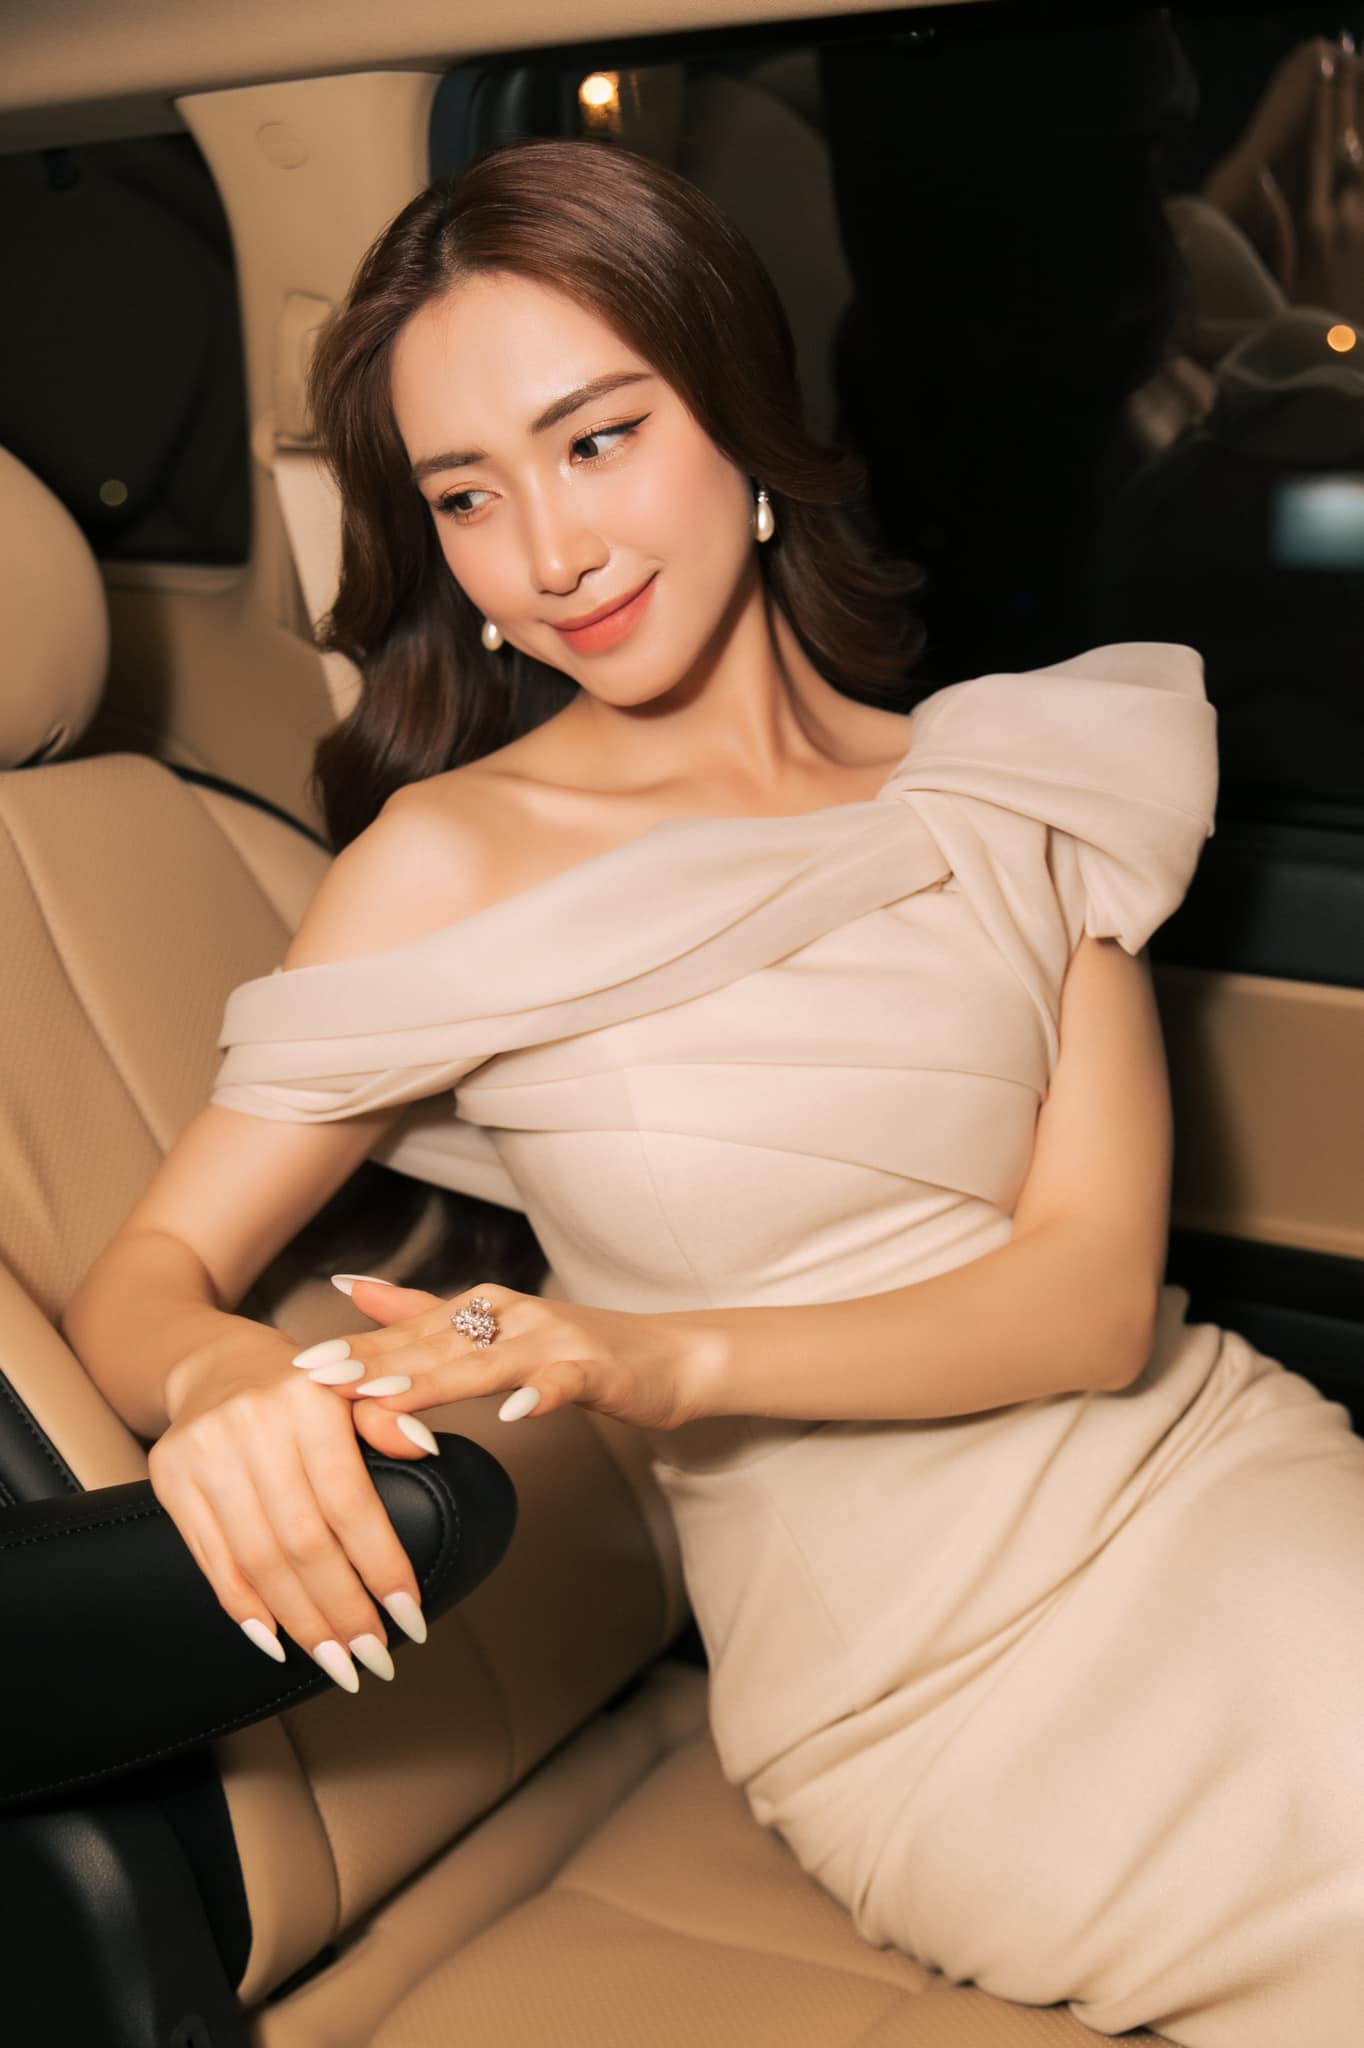 Hòa Minzy tiết lộ lý do đi hát kiếm tiền tỷ vẫn phải bán hàng online - 4